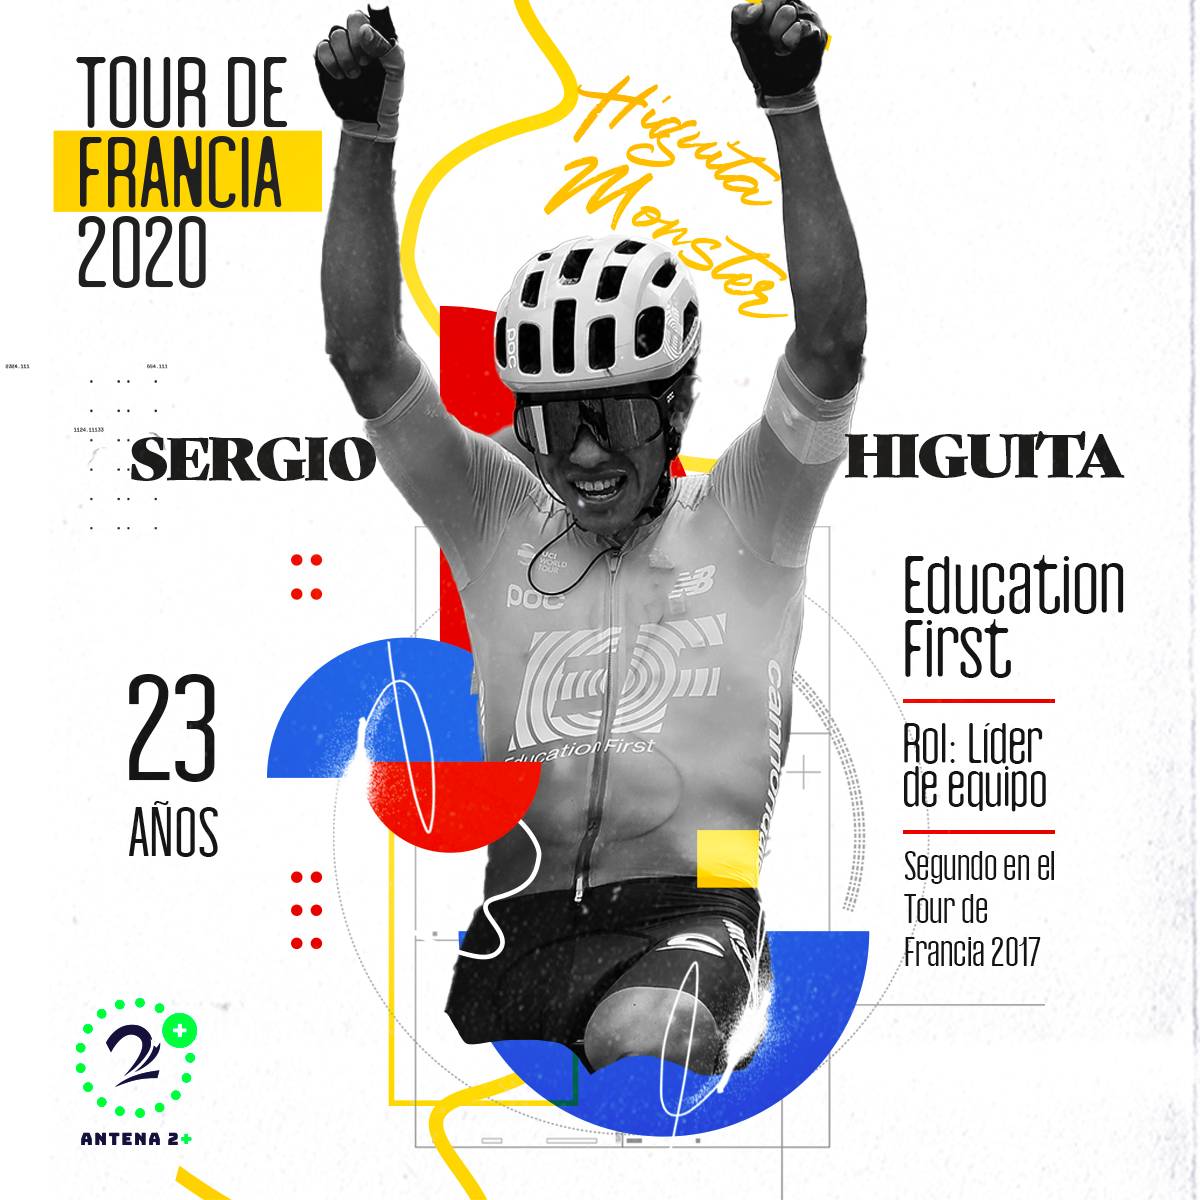 Sergio Higuita, Tour de Francia